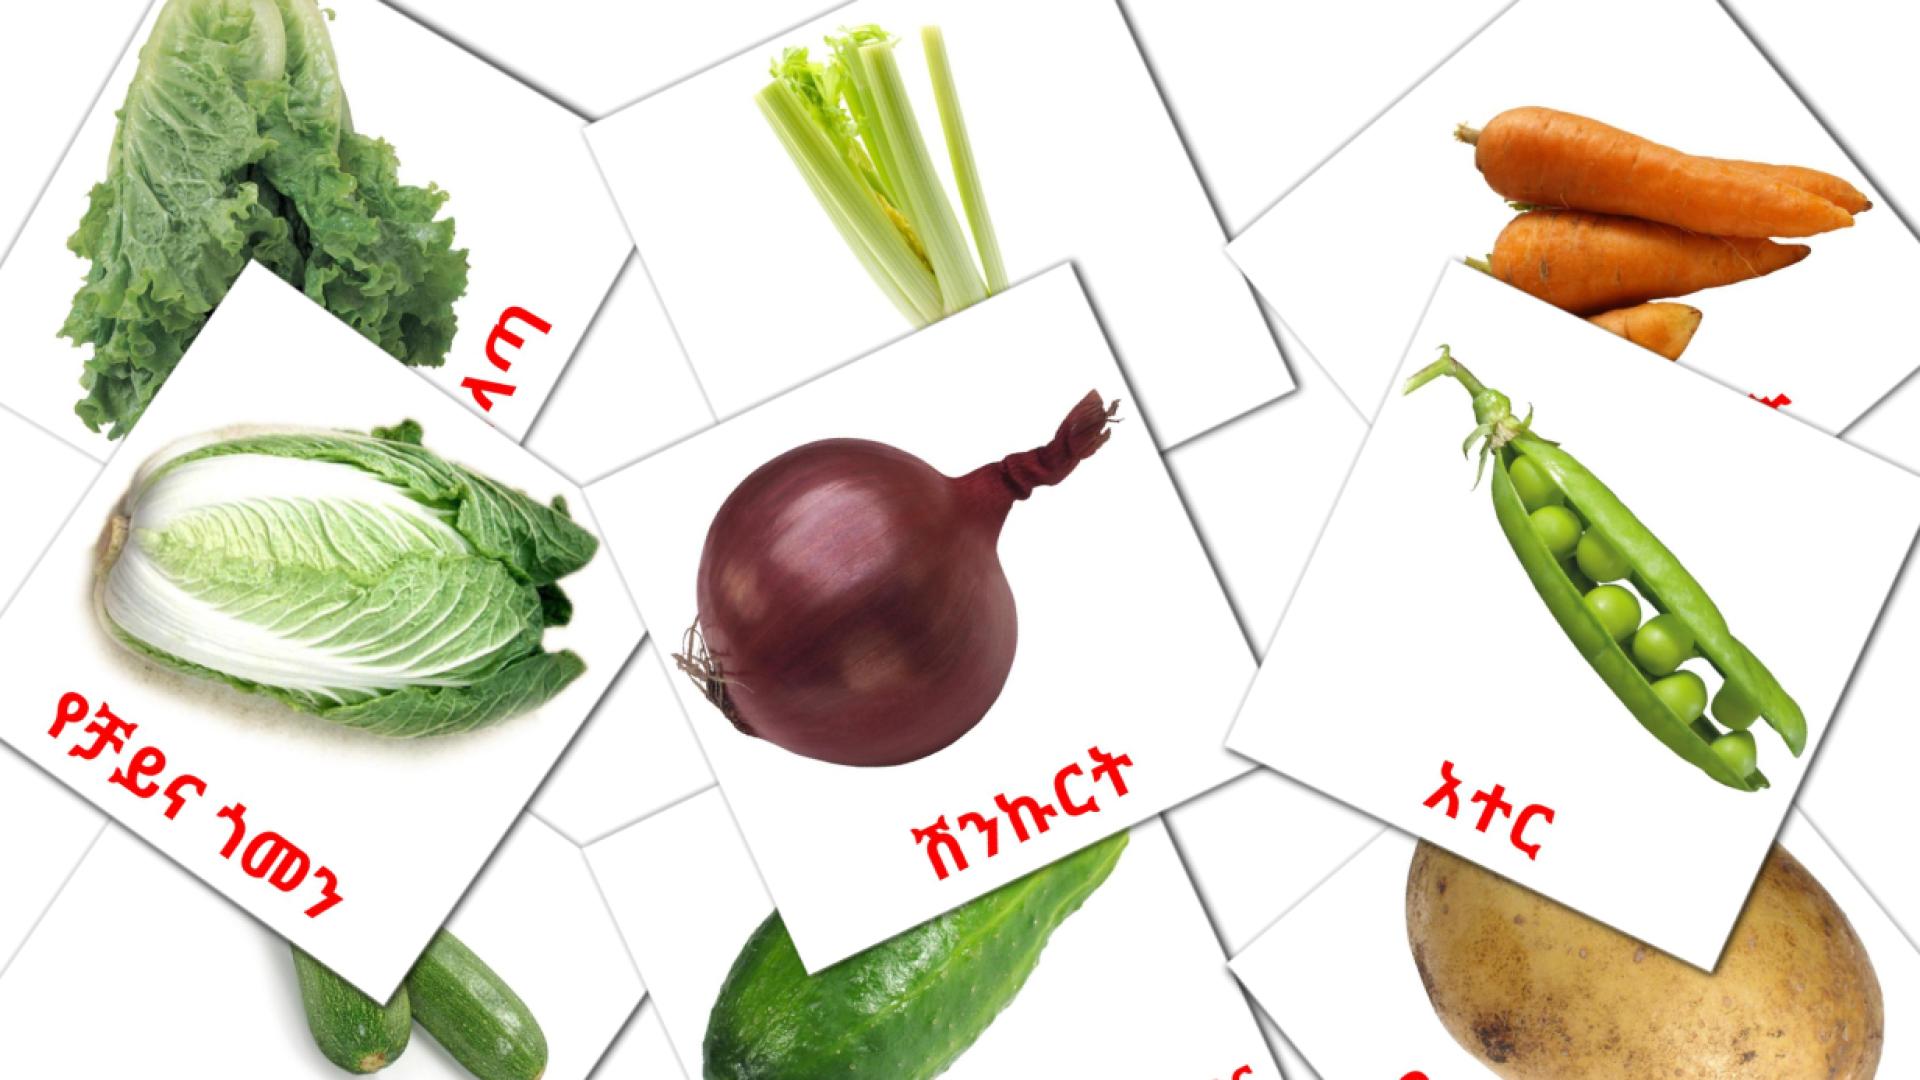 Gemüse - Amharische Vokabelkarten